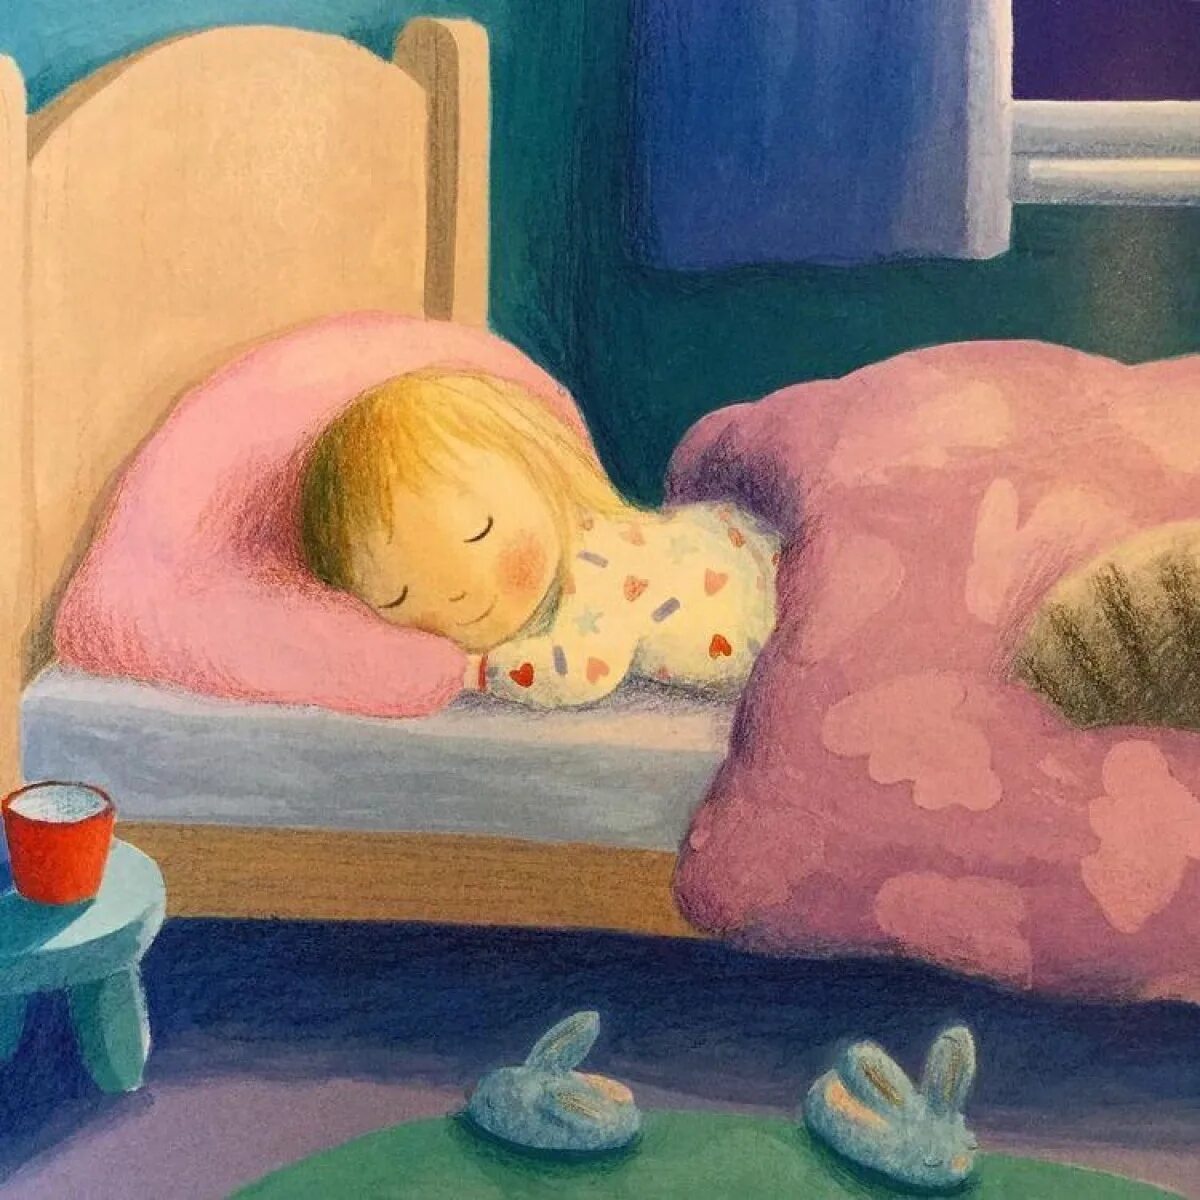 Спи спокойной ночи малыши. Спящий ребенок. Детские иллюстрации сон.